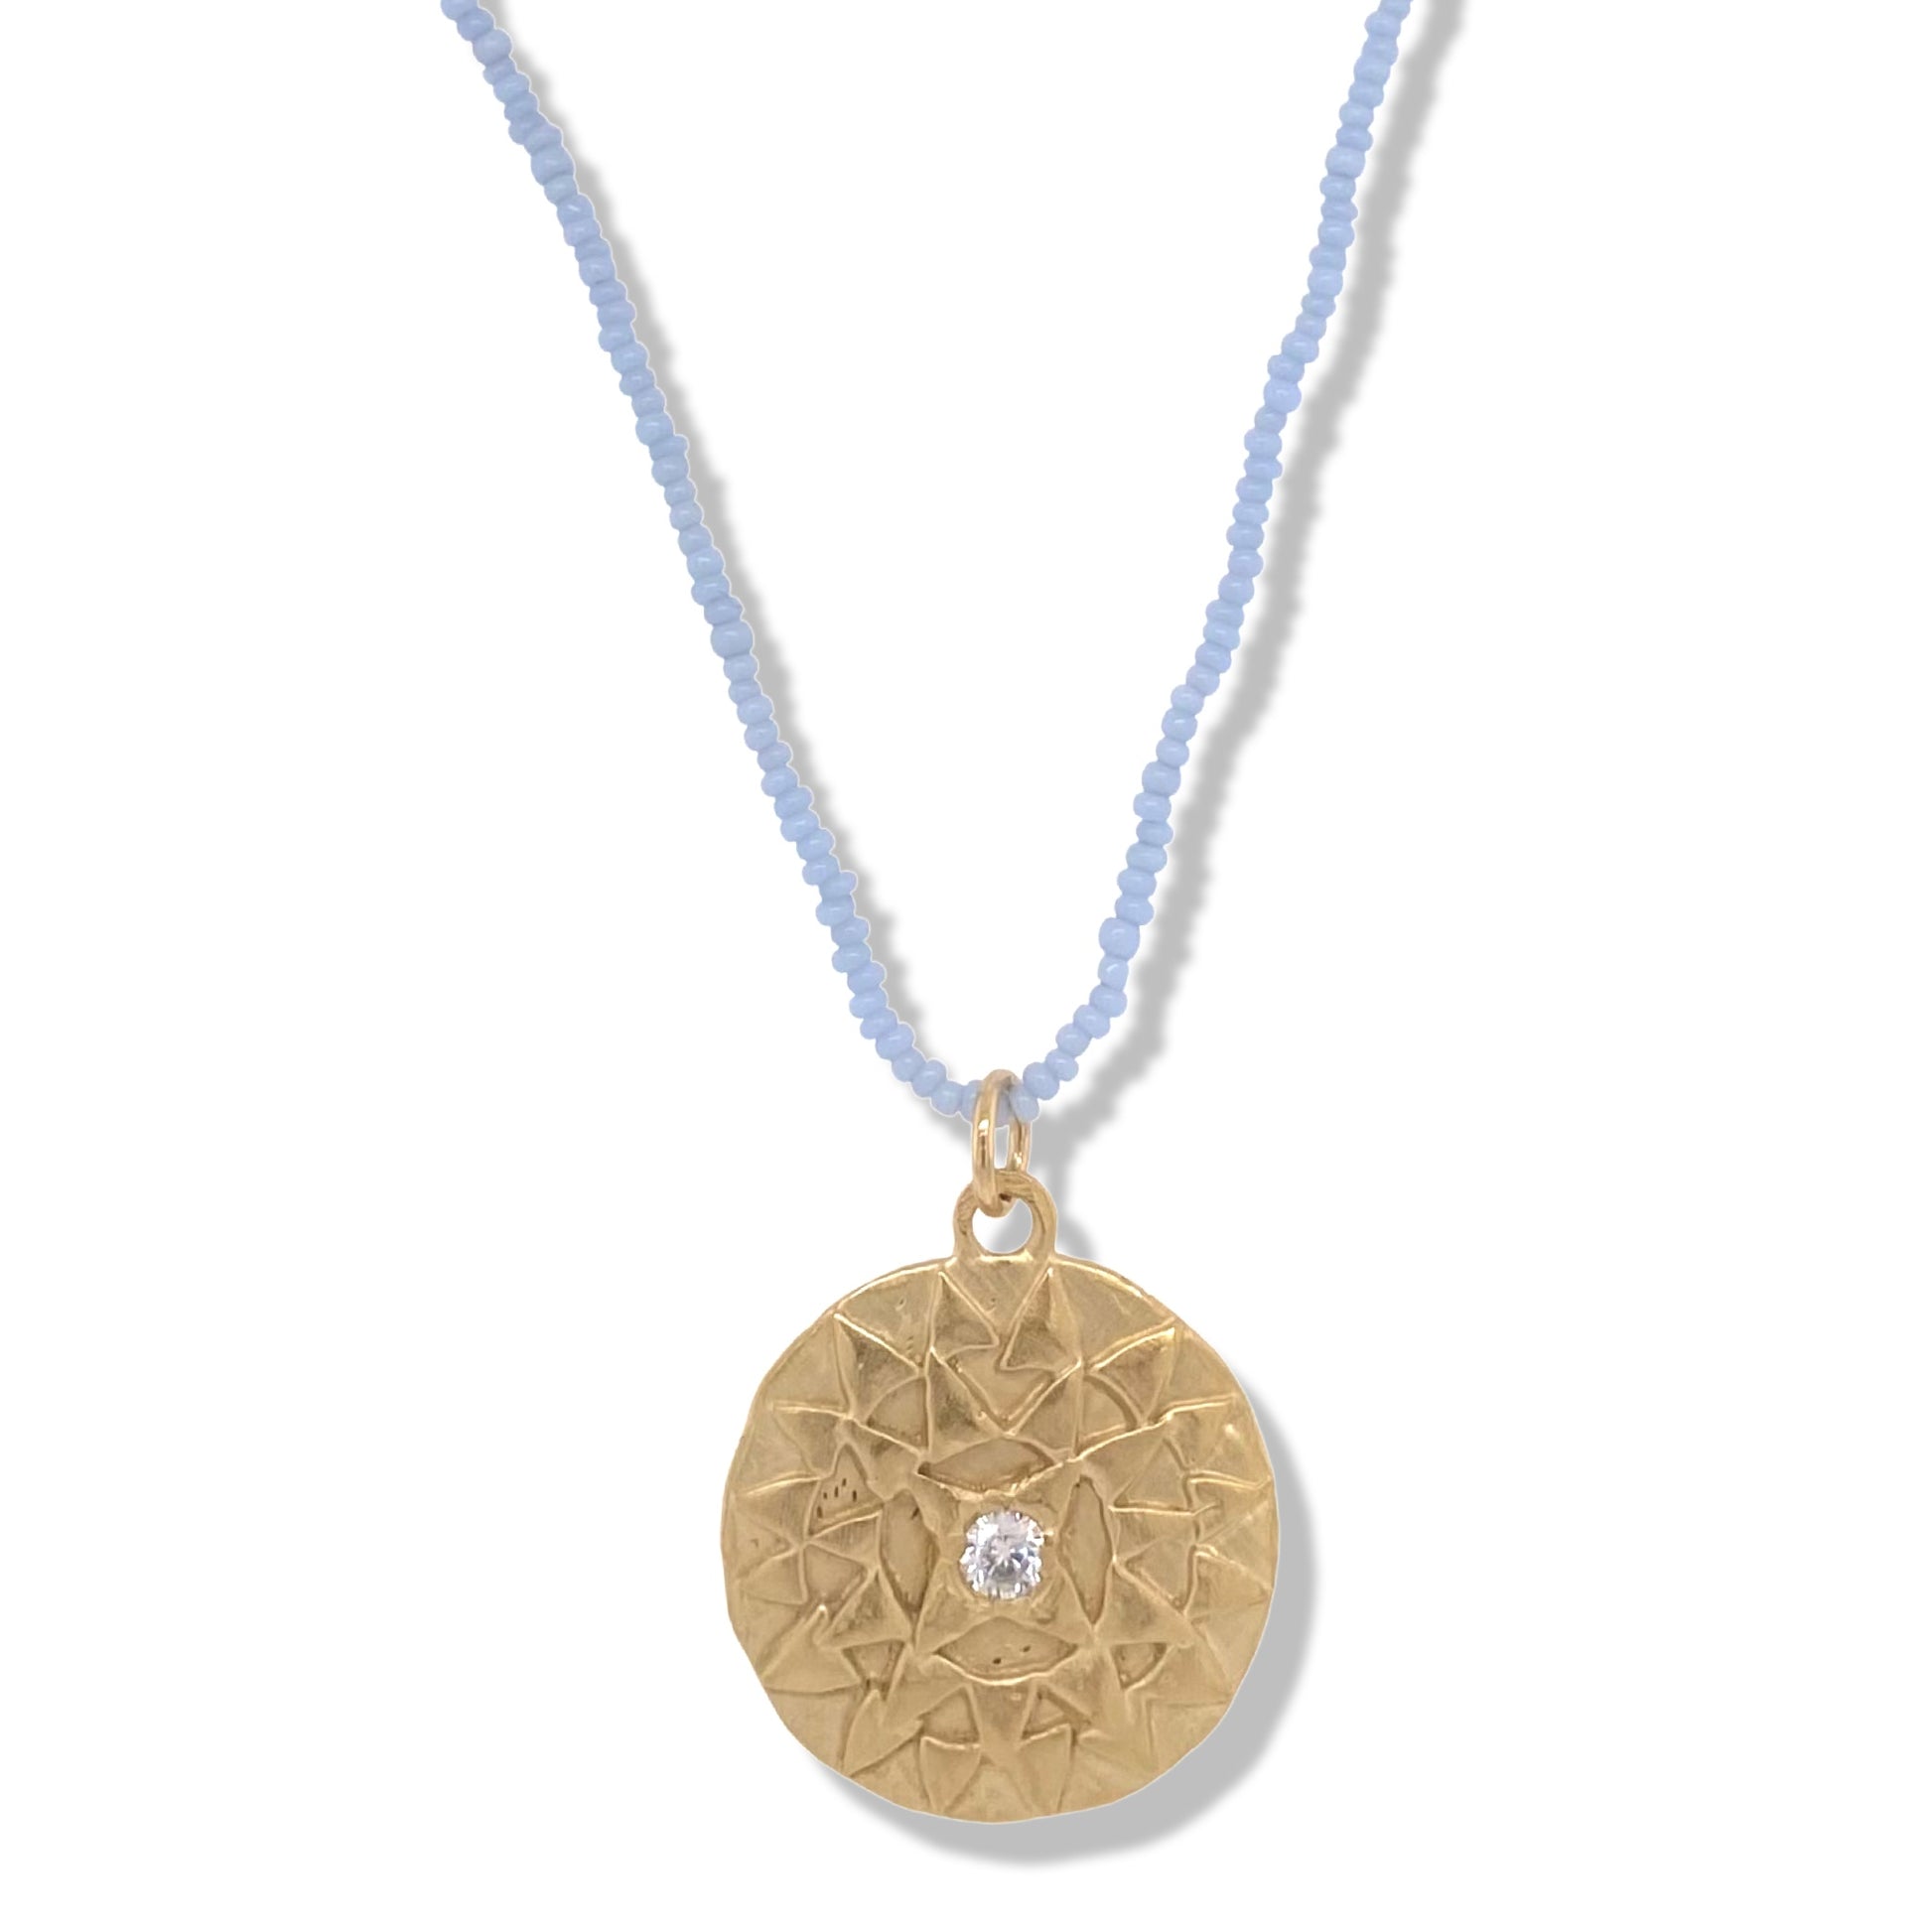 Surya Necklace on Baby Blue Beads | Nalu Nantucket